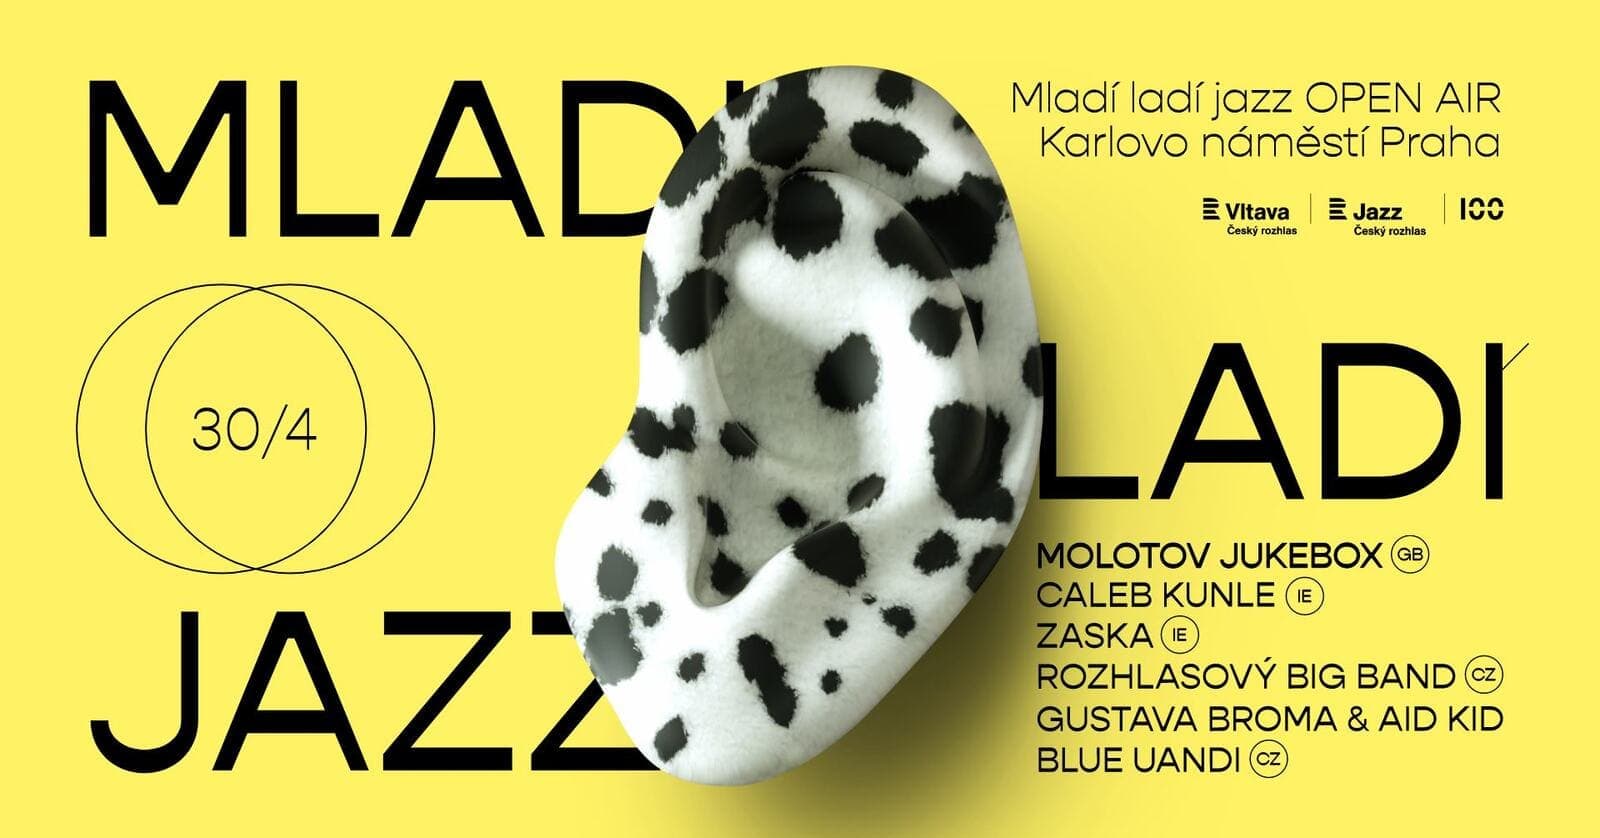 30 апреля в Праге пройдет джазовый фестиваль Mladí ladí jazz Open Air 2023